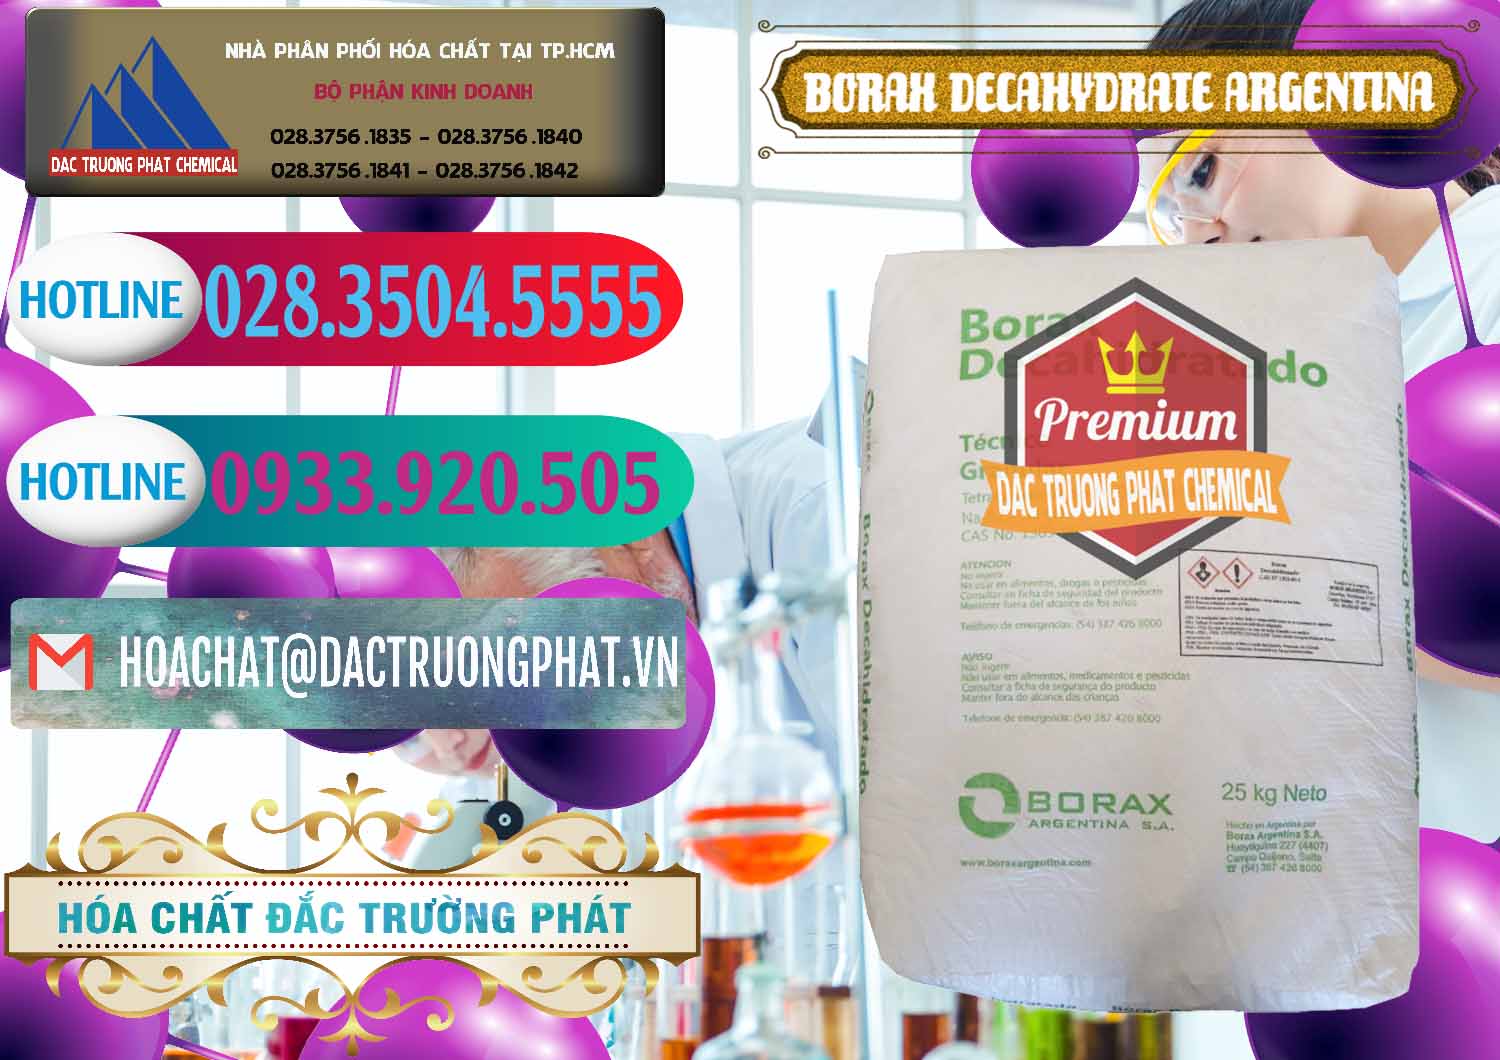 Chuyên cung cấp - bán Borax Decahydrate Argentina - 0446 - Chuyên phân phối & cung cấp hóa chất tại TP.HCM - truongphat.vn